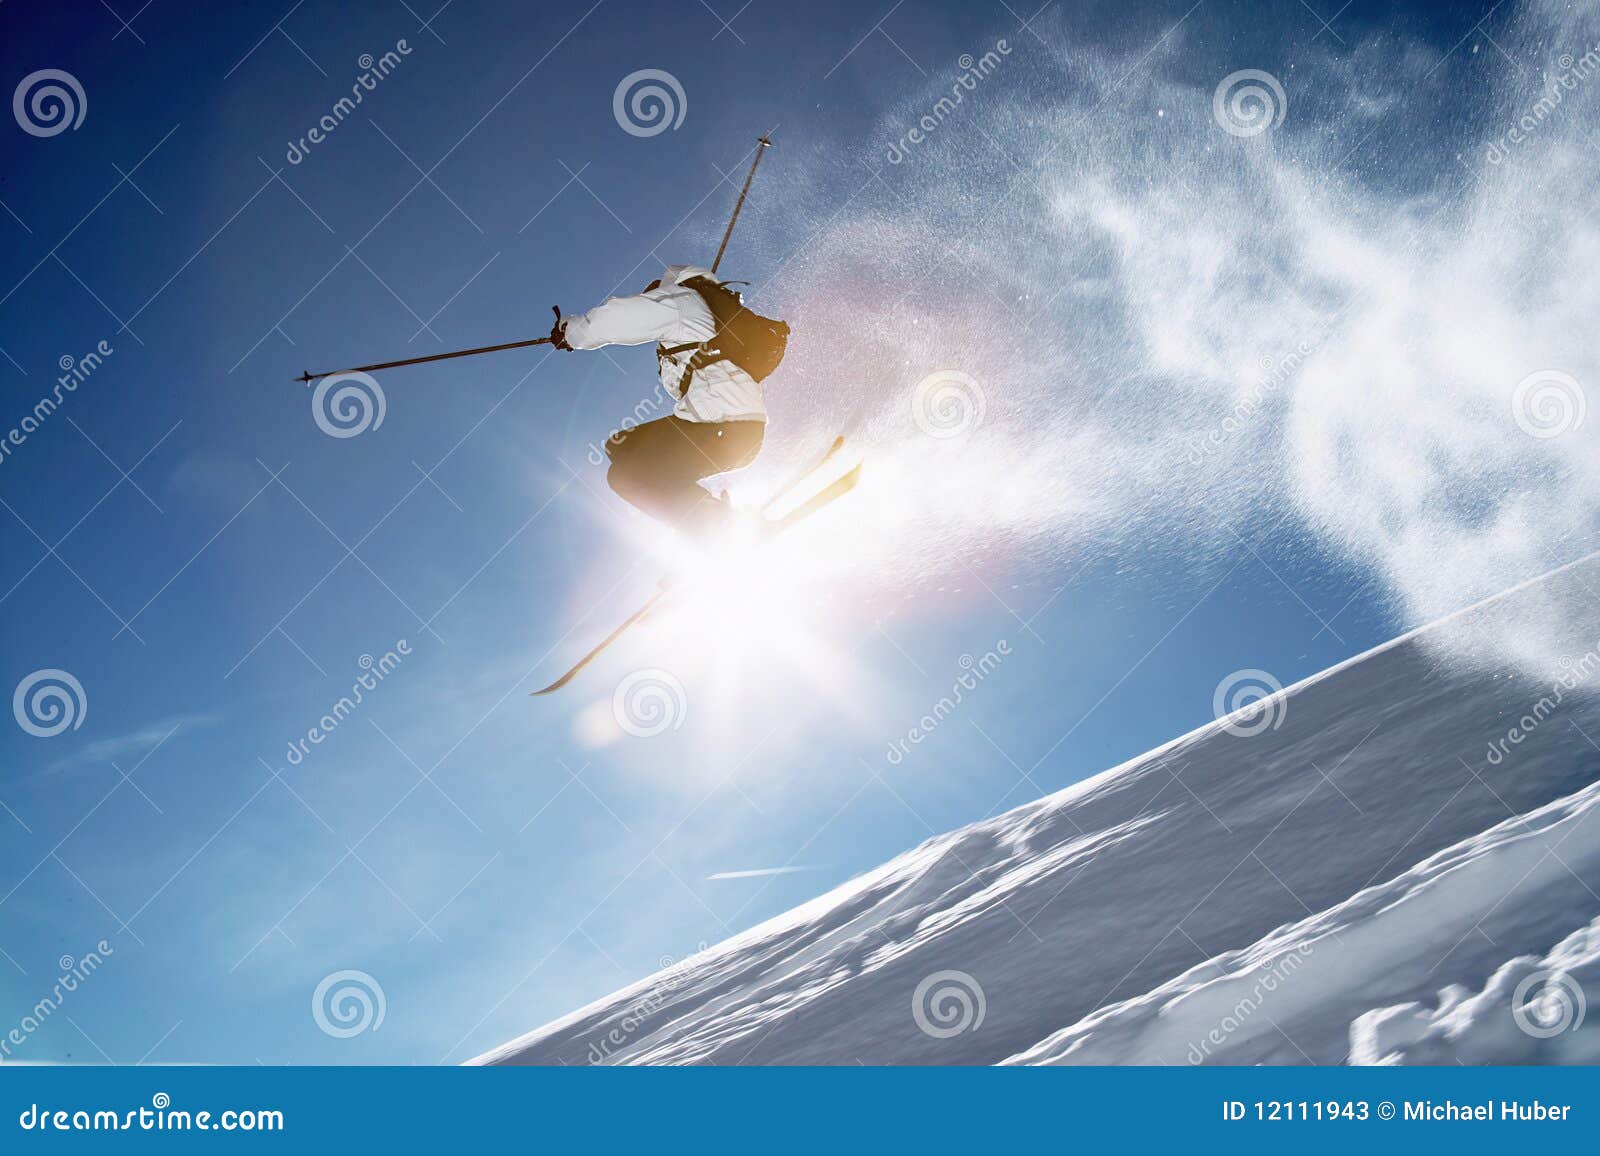 skier jump winter